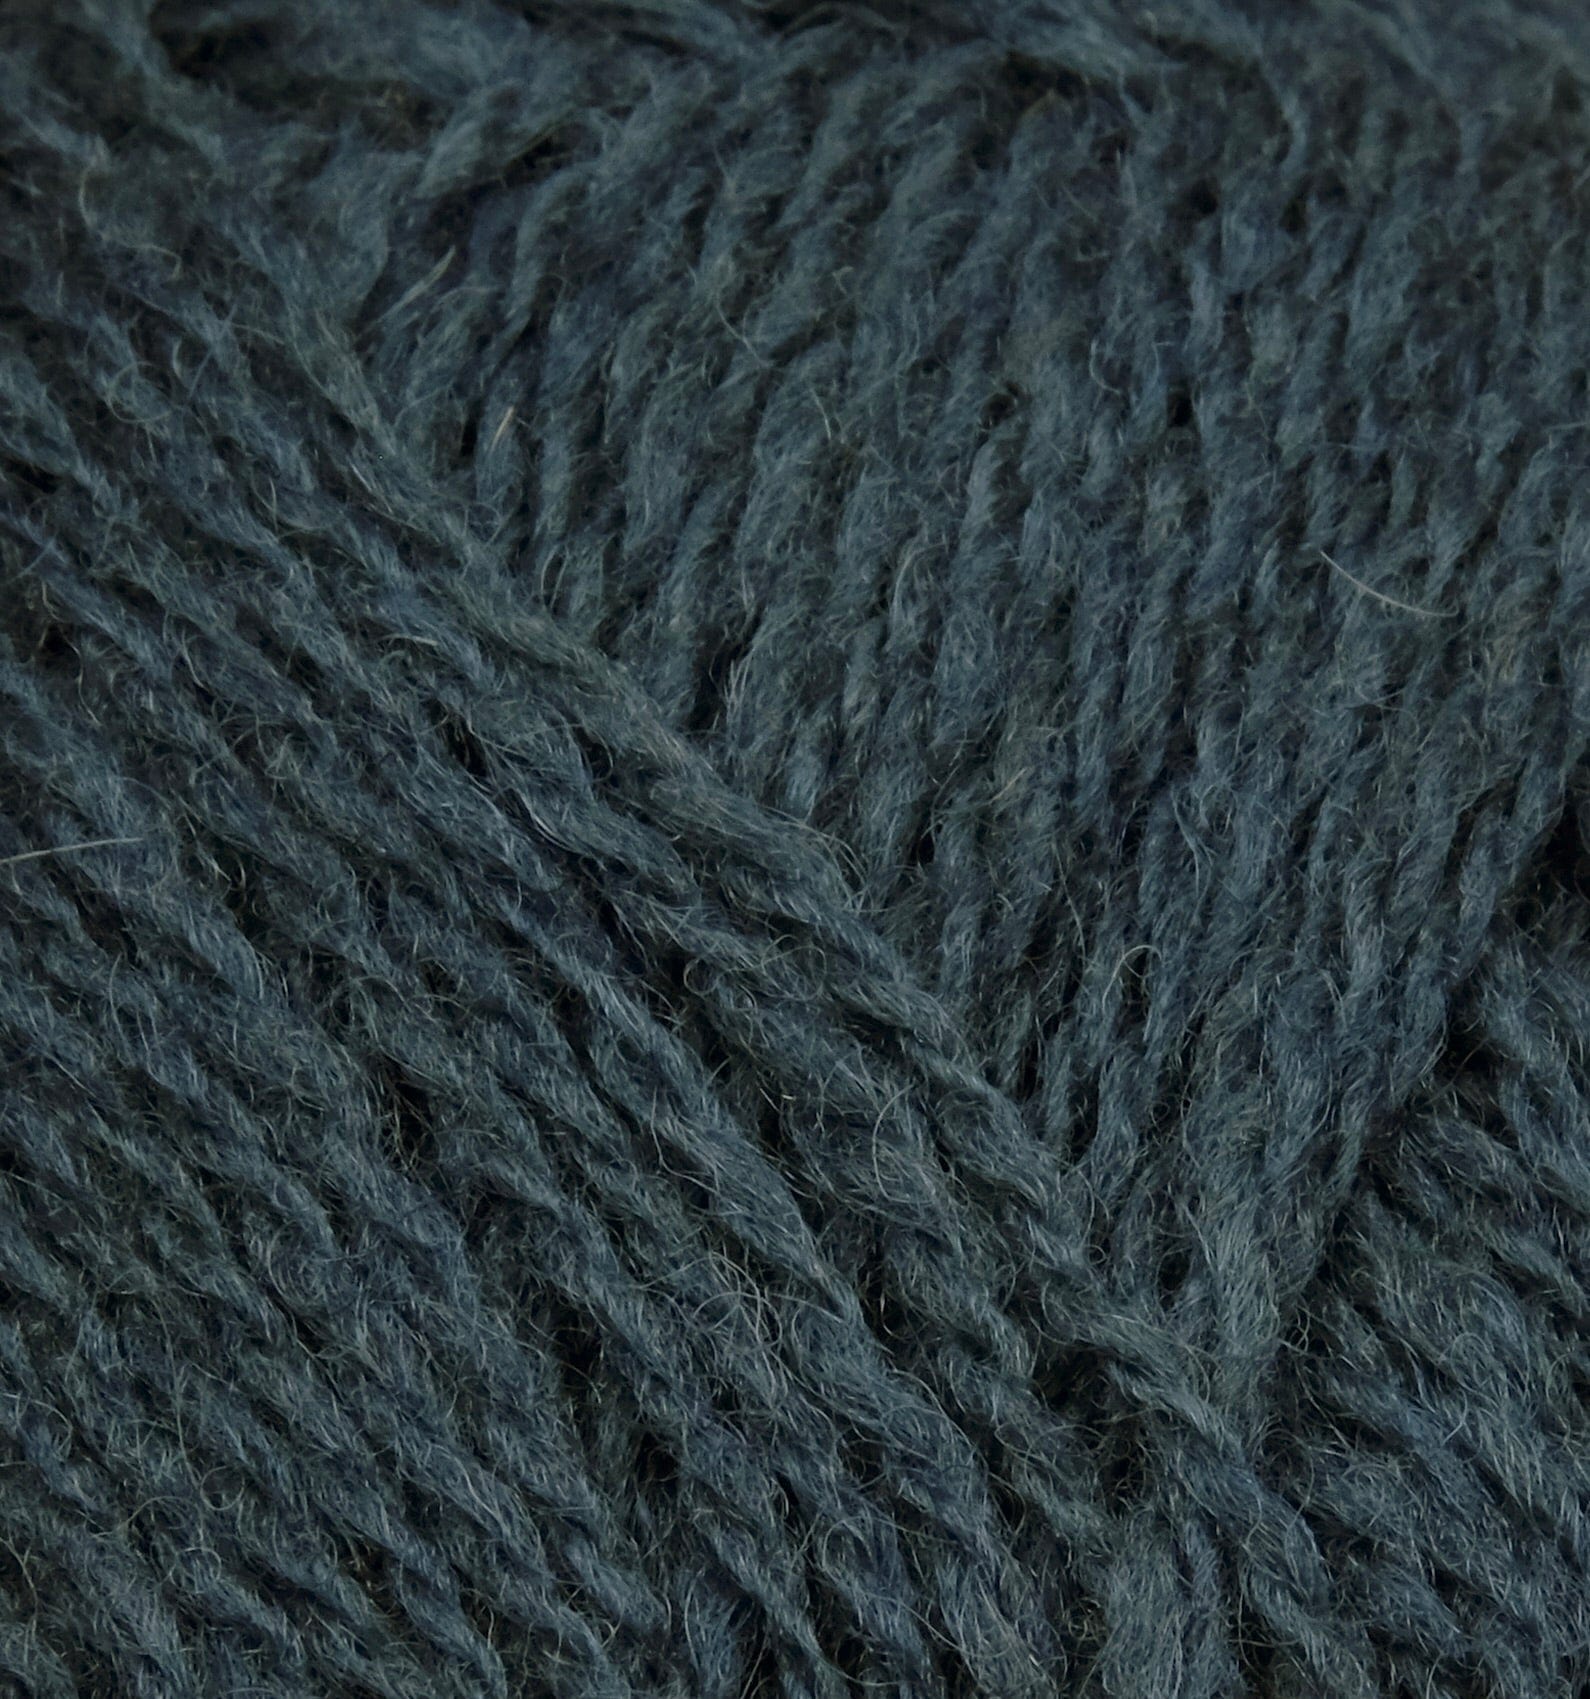 Shetland Spindrift Yarn